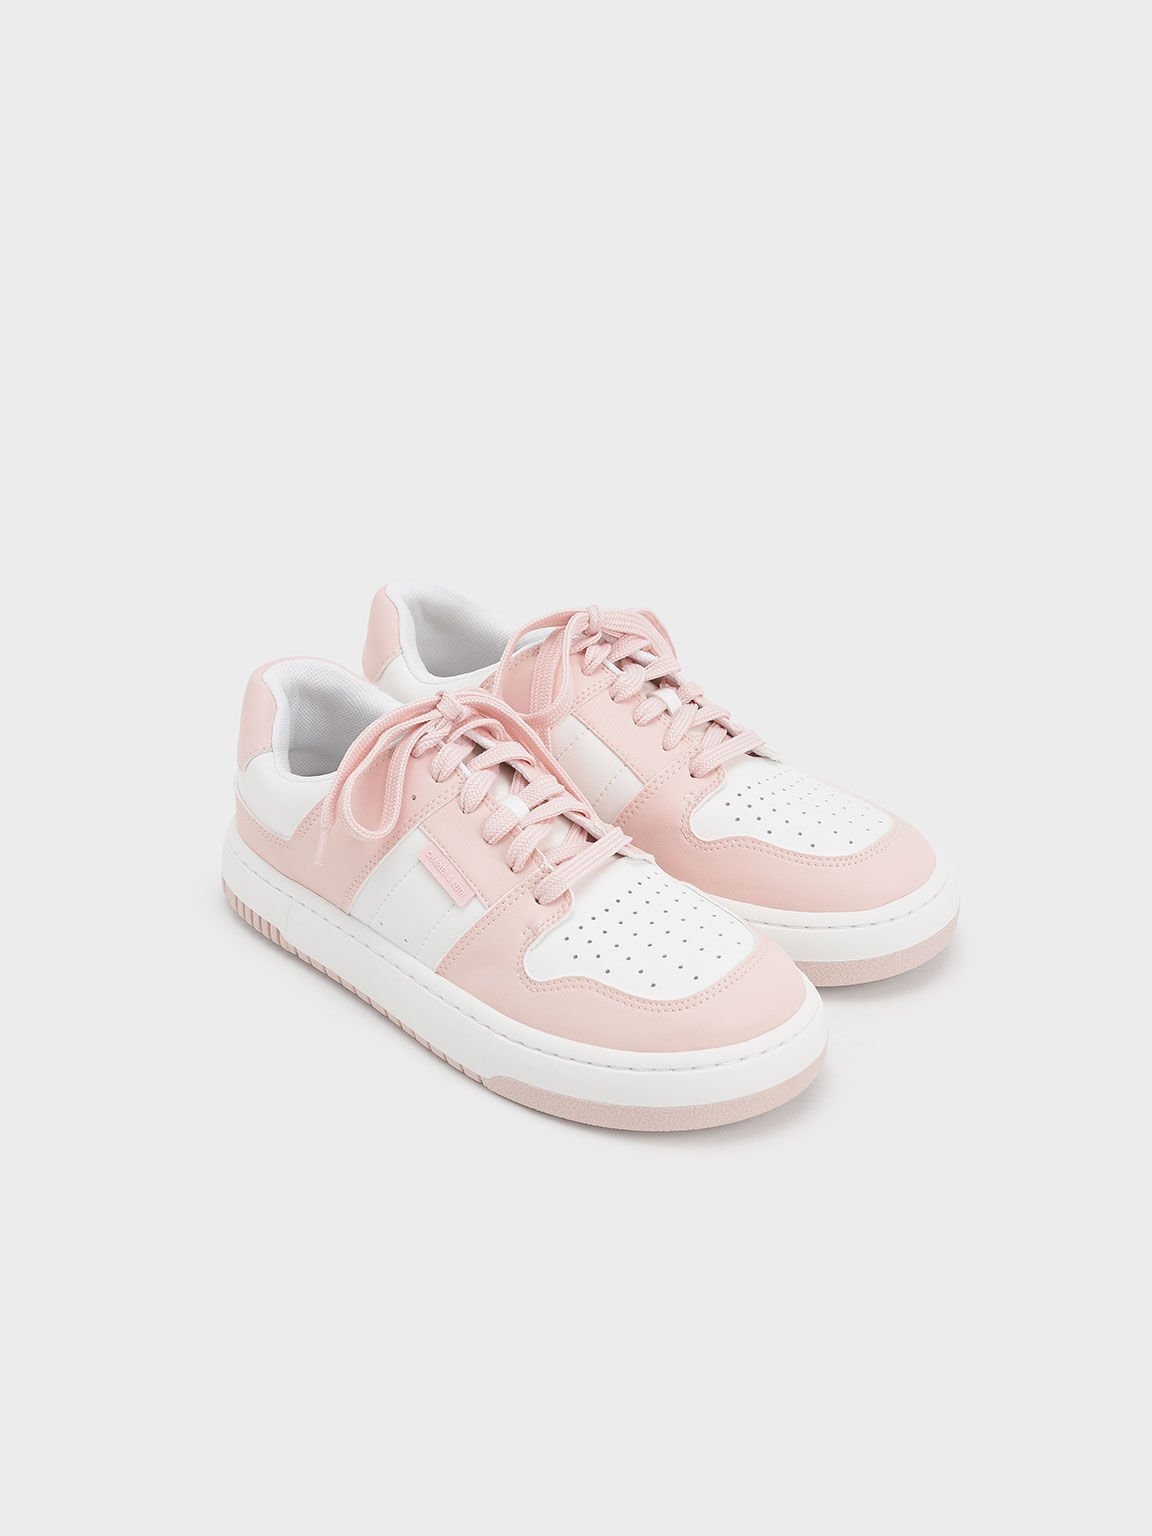 雙色復古厚底球鞋, 粉紅色, hi-res